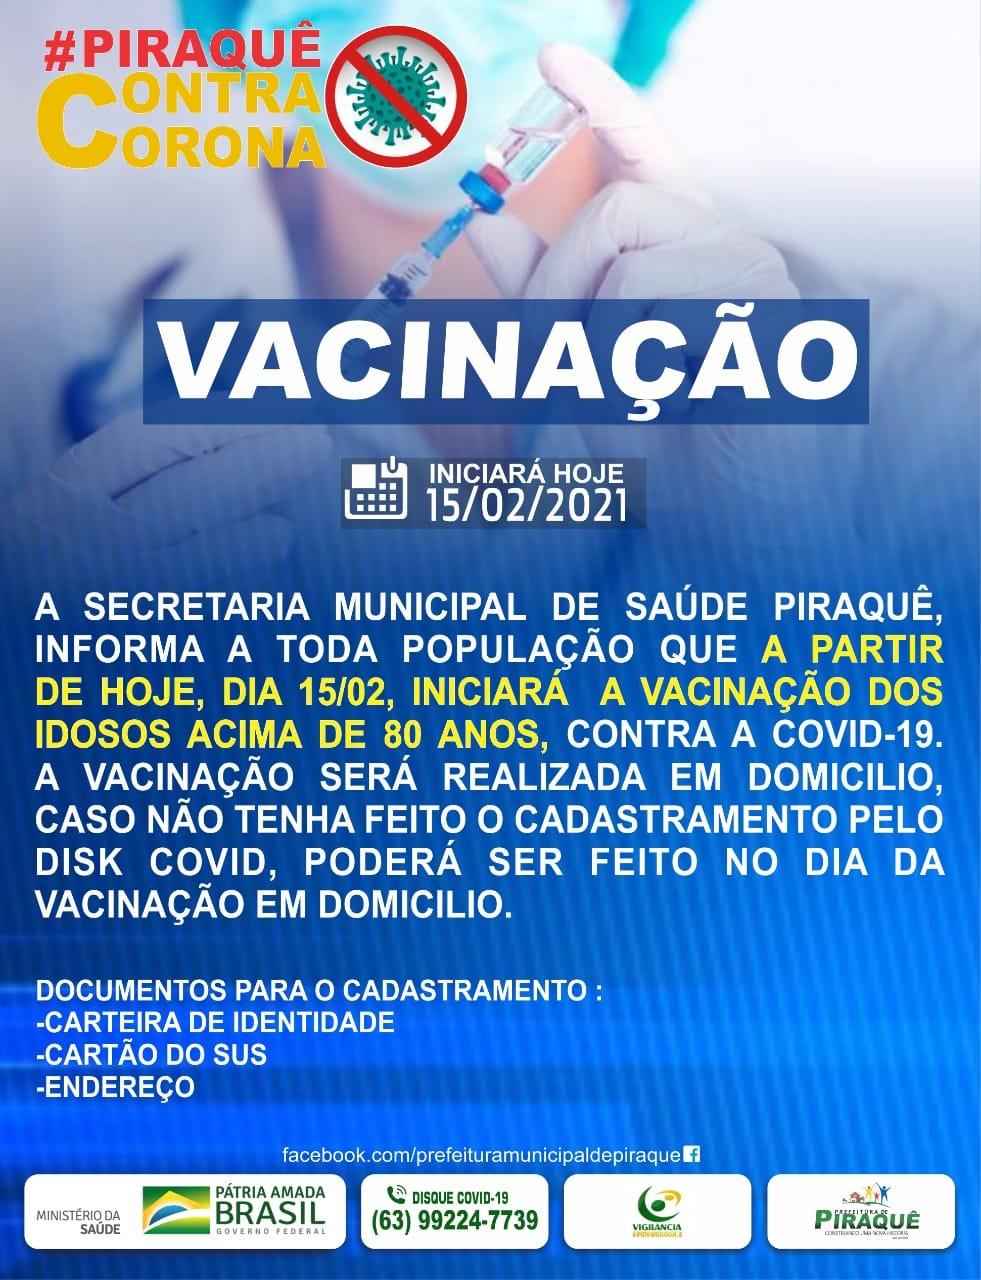 VACINAÇÃO DOS IDOSOS COMEÇA NESTA SEGUNDA-FEIRA DIA 15/02.